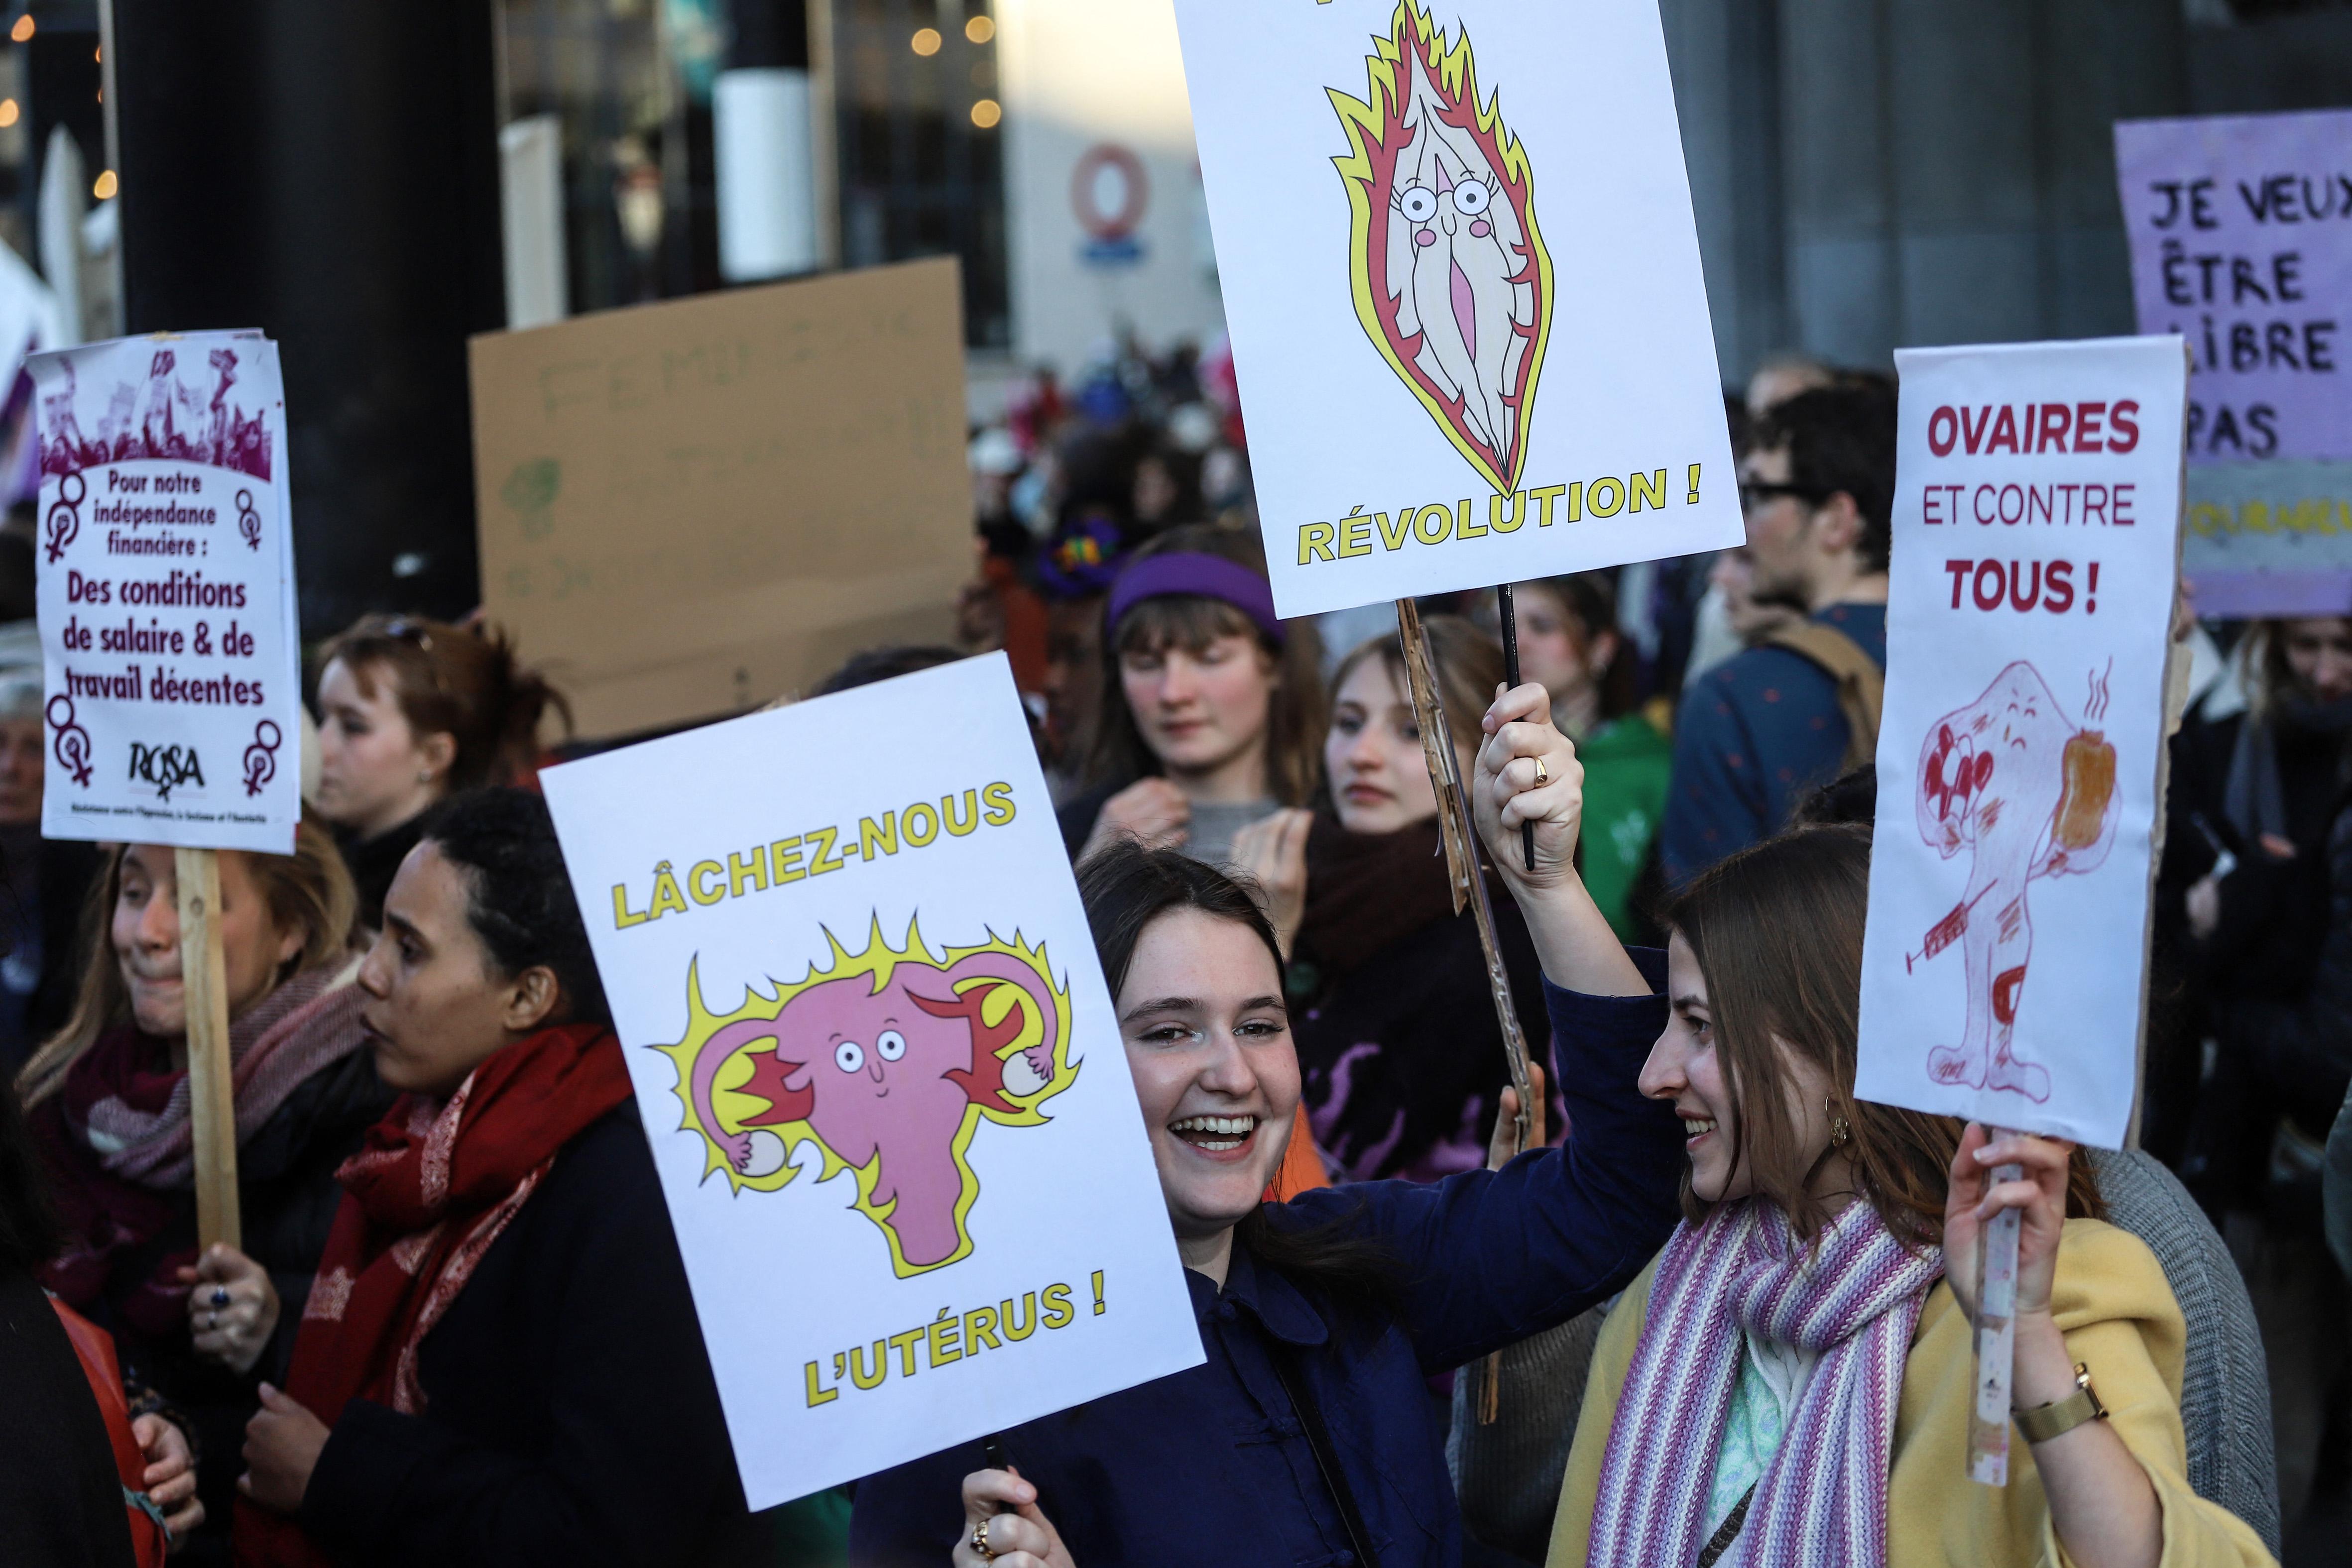 Slogans féministes humorisqtiques sur des pancartes lors de la manifestation du 8 mars 2022 à Bruxelles : "lachez-nous l'utérus" et ovaires et contre tous"